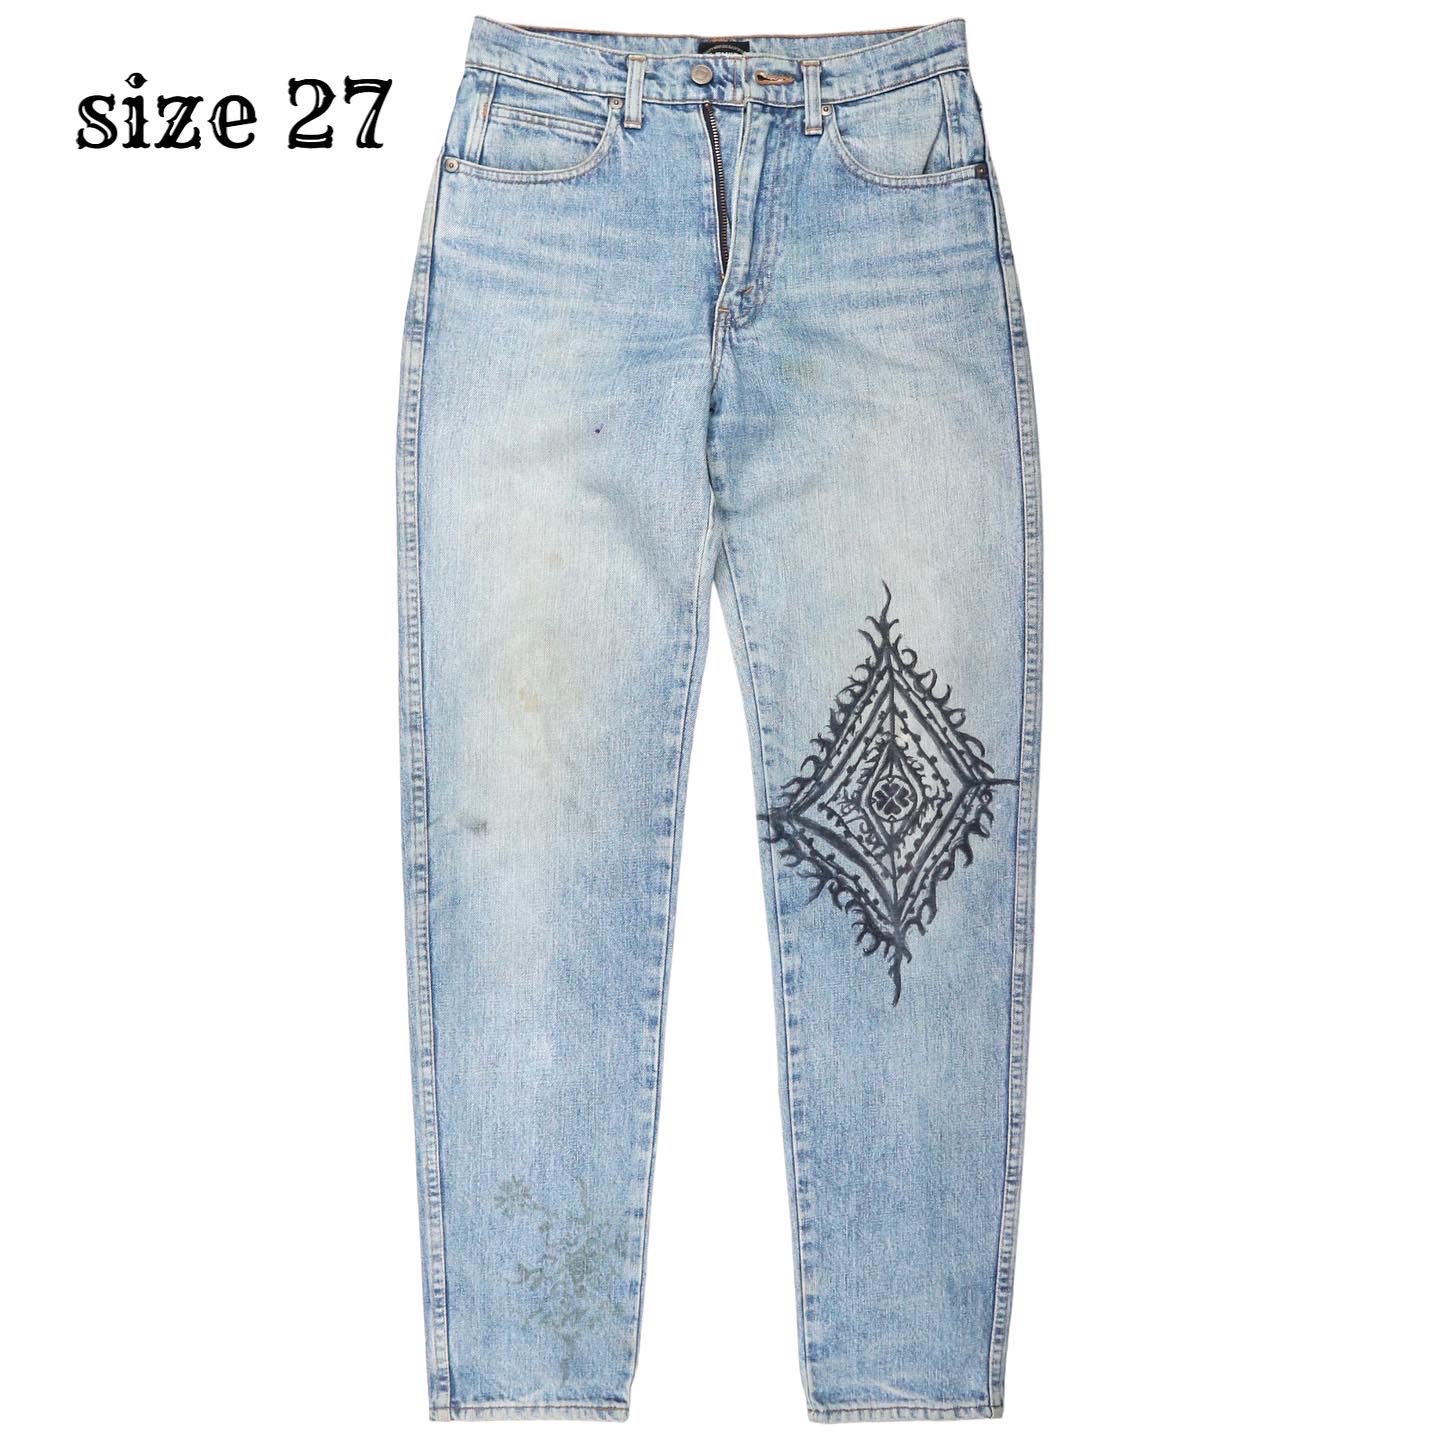 Levi’s 635 Jeans Size 27